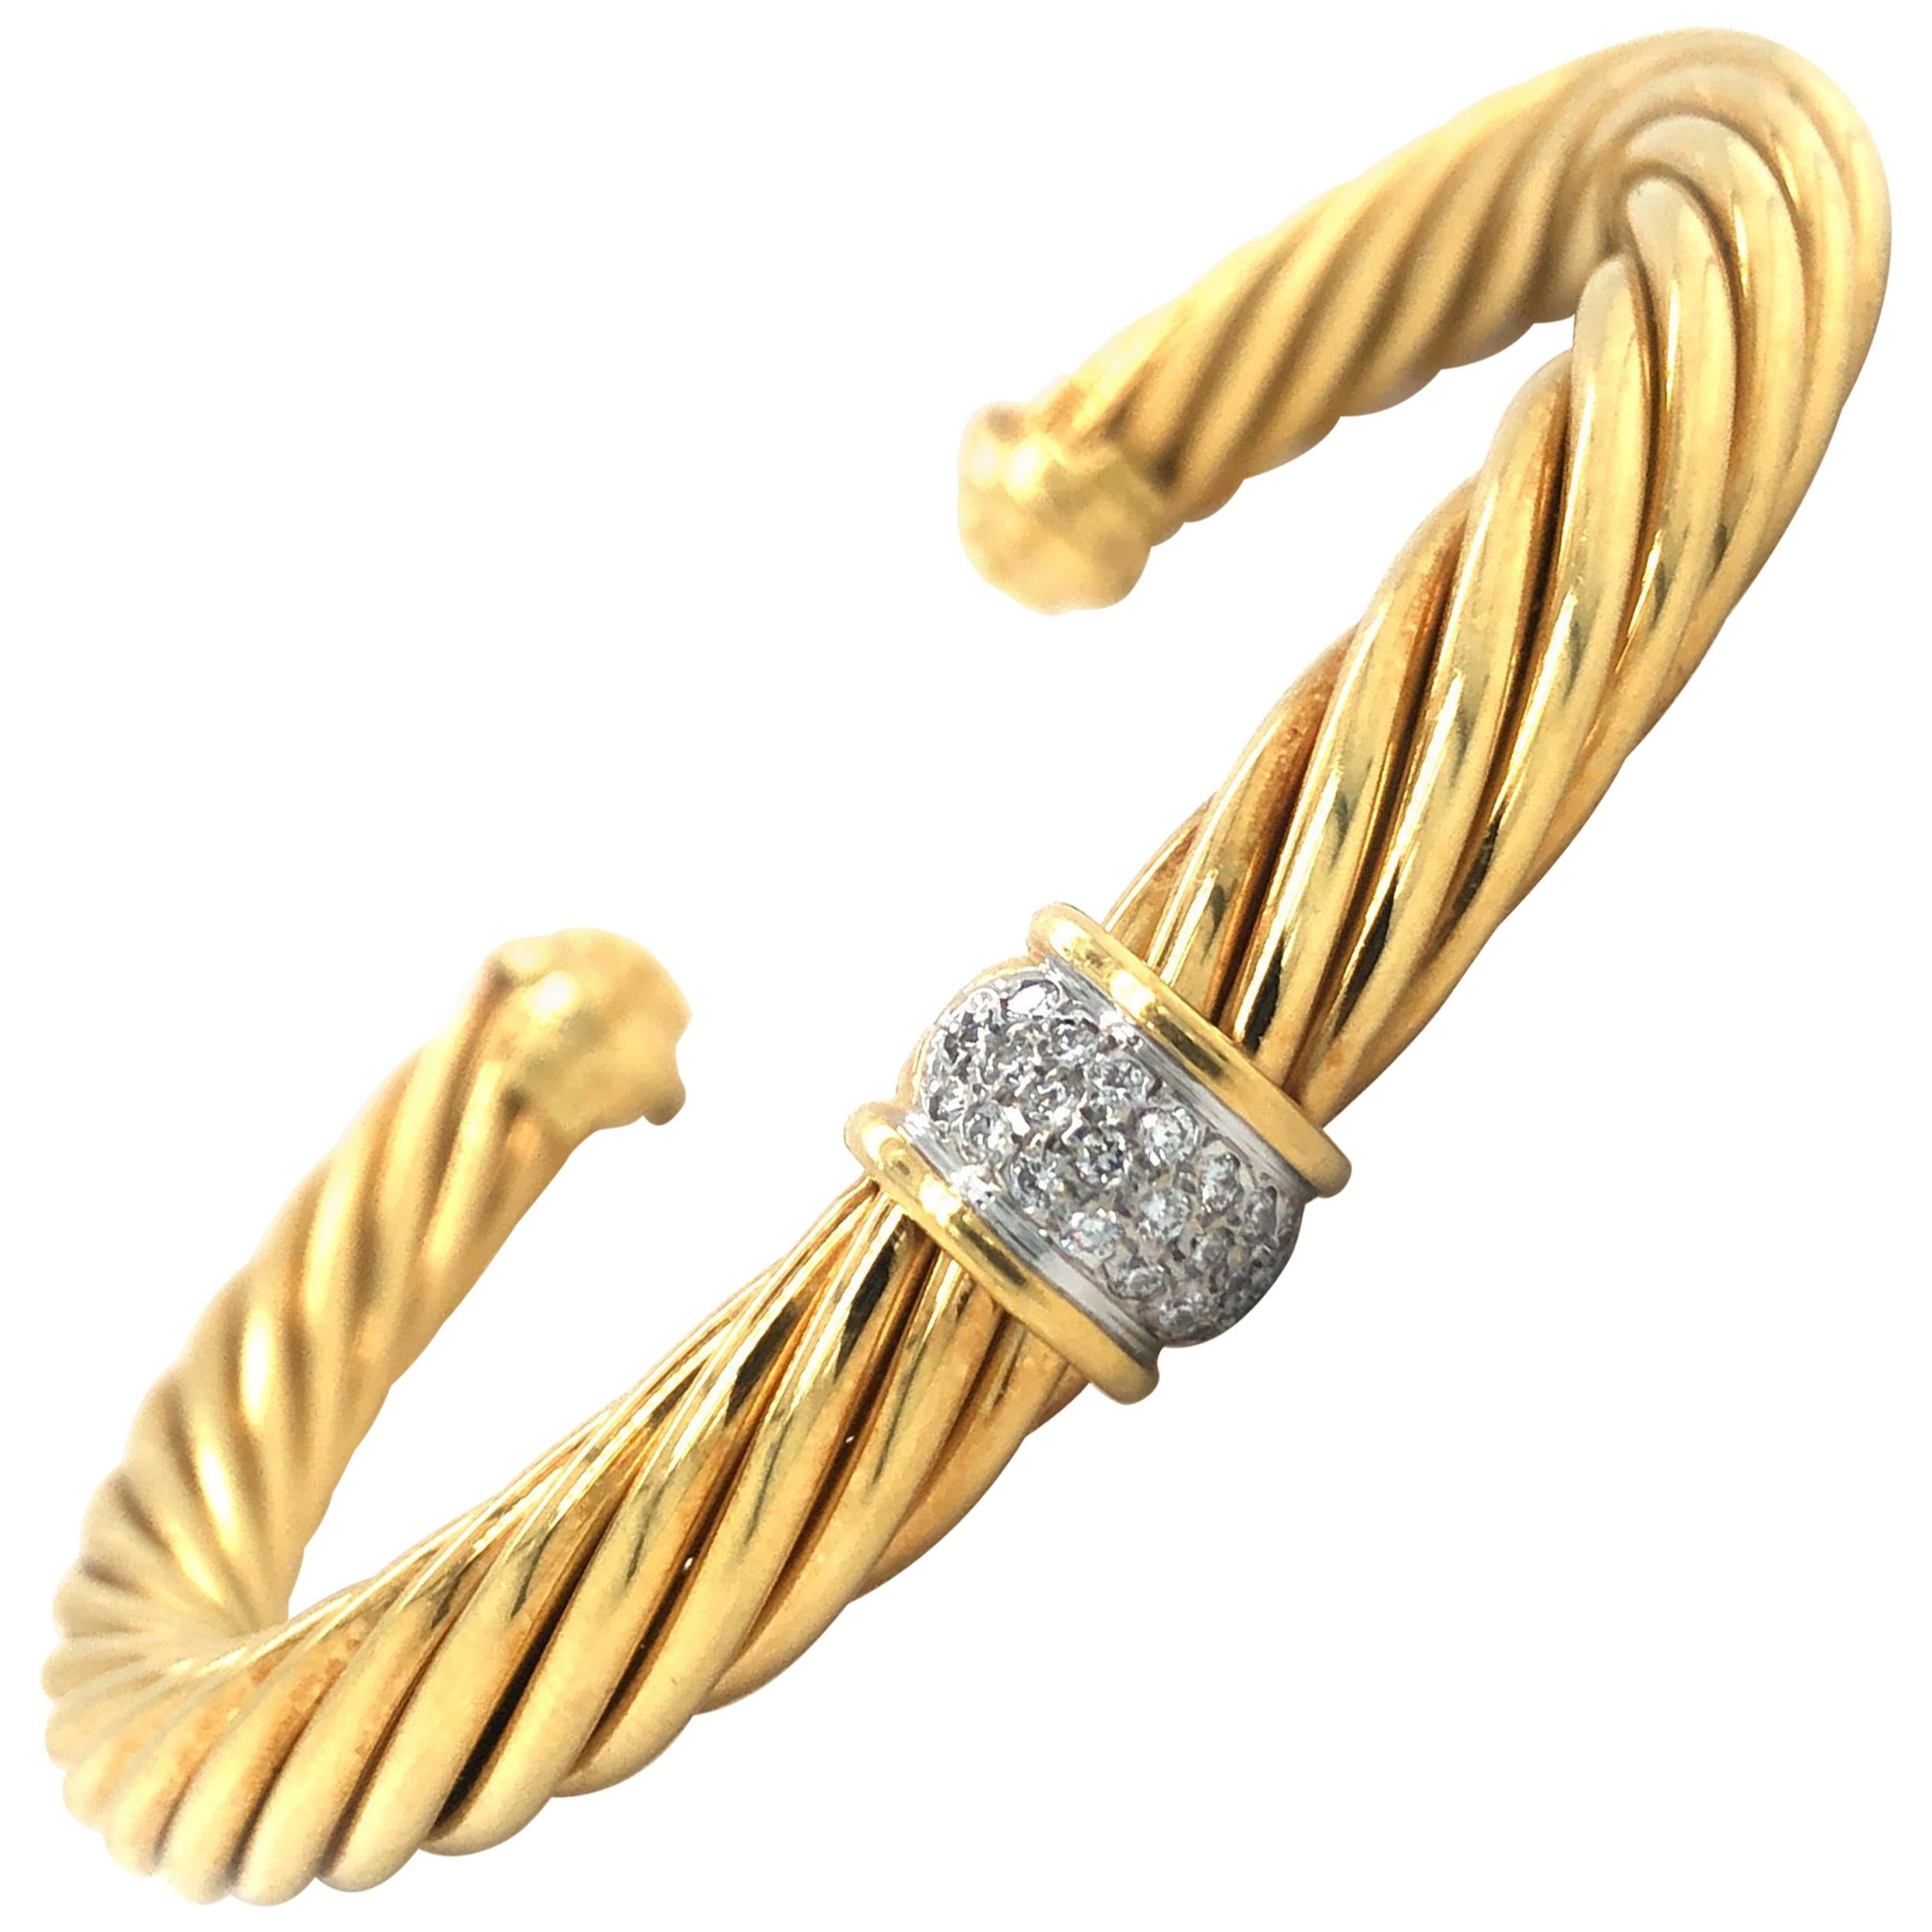 David Yurman 18 Karat Yellow Gold and Diamond Twisted Cable Cuff Bracelet